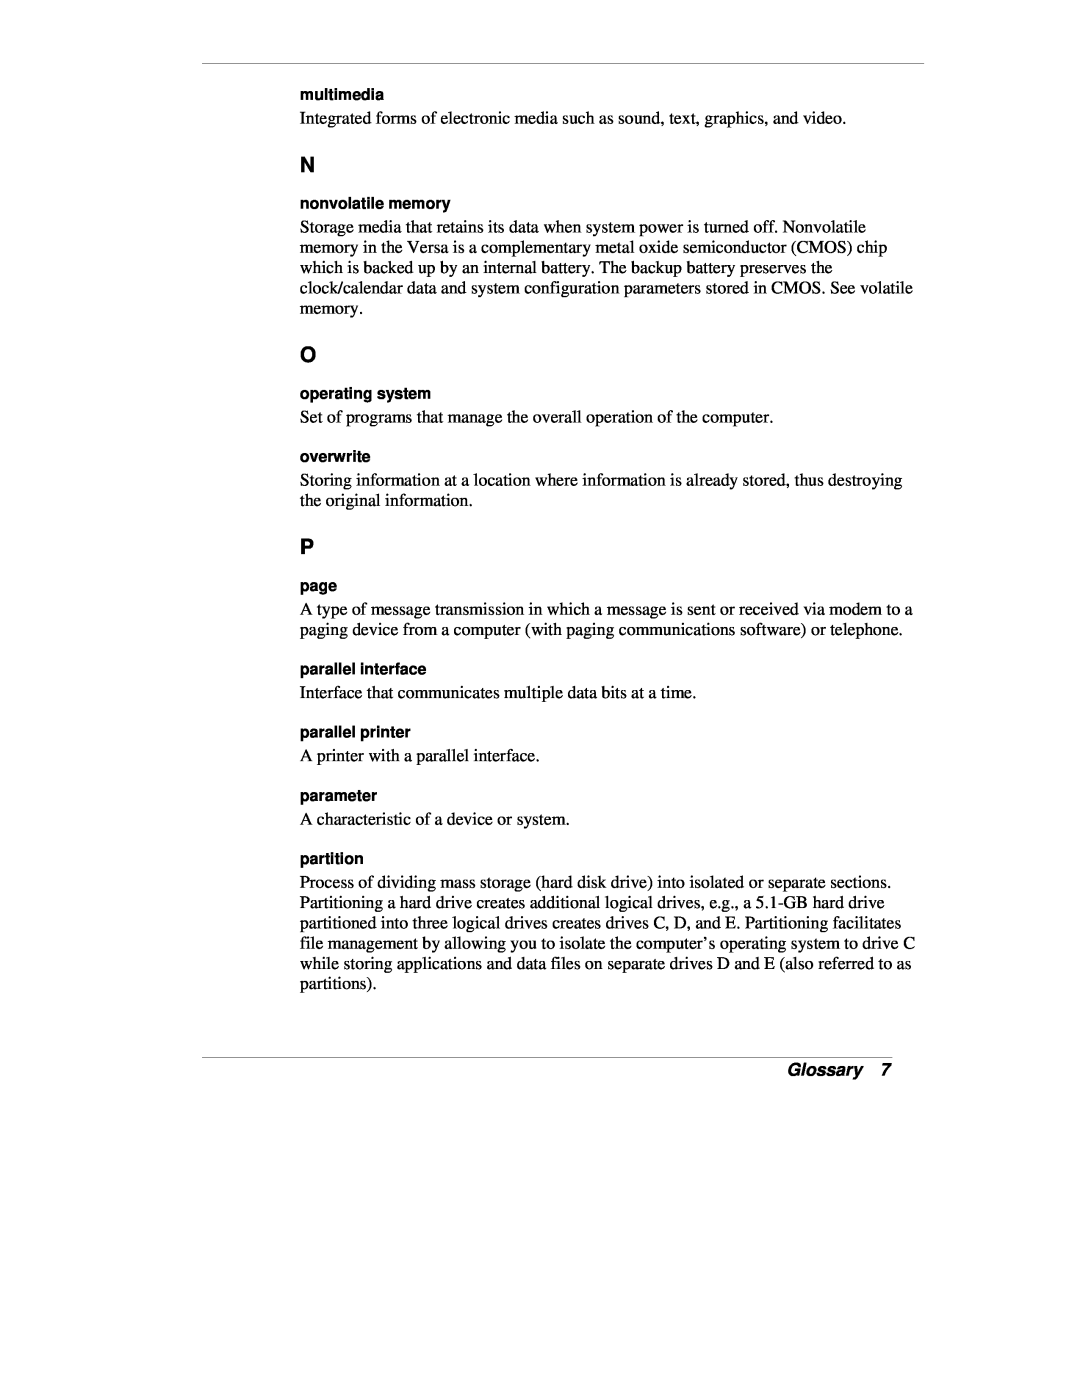 NEC VX manual Glossary 